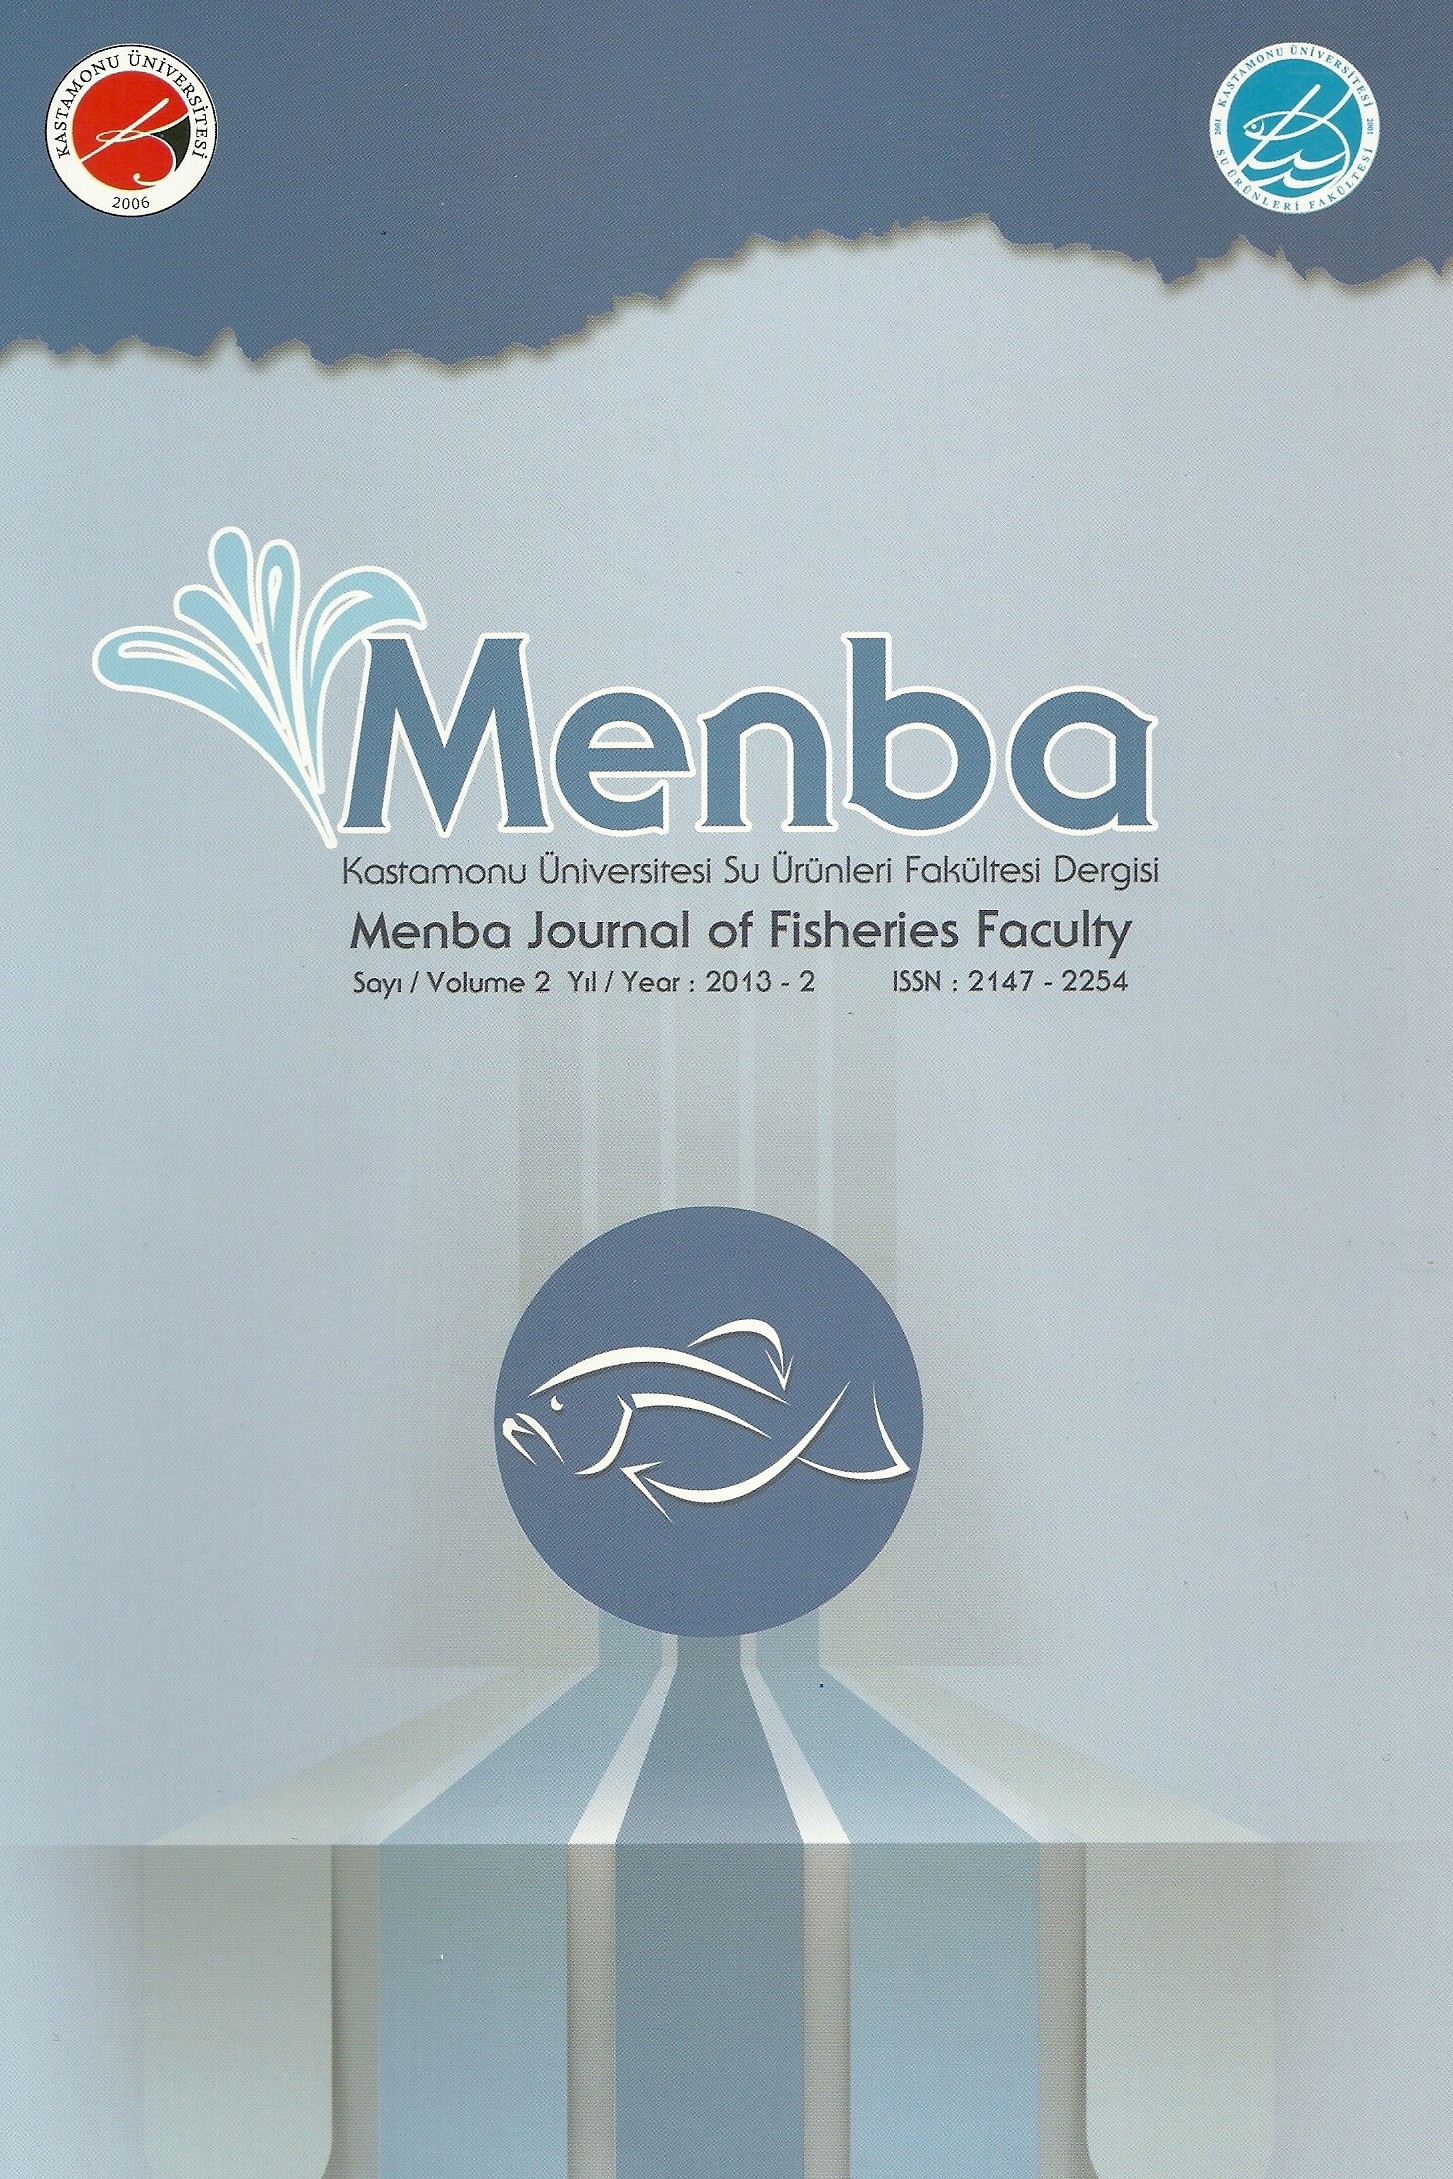 Menba Kastamonu Üniversitesi Su Ürünleri Fakültesi Dergisi